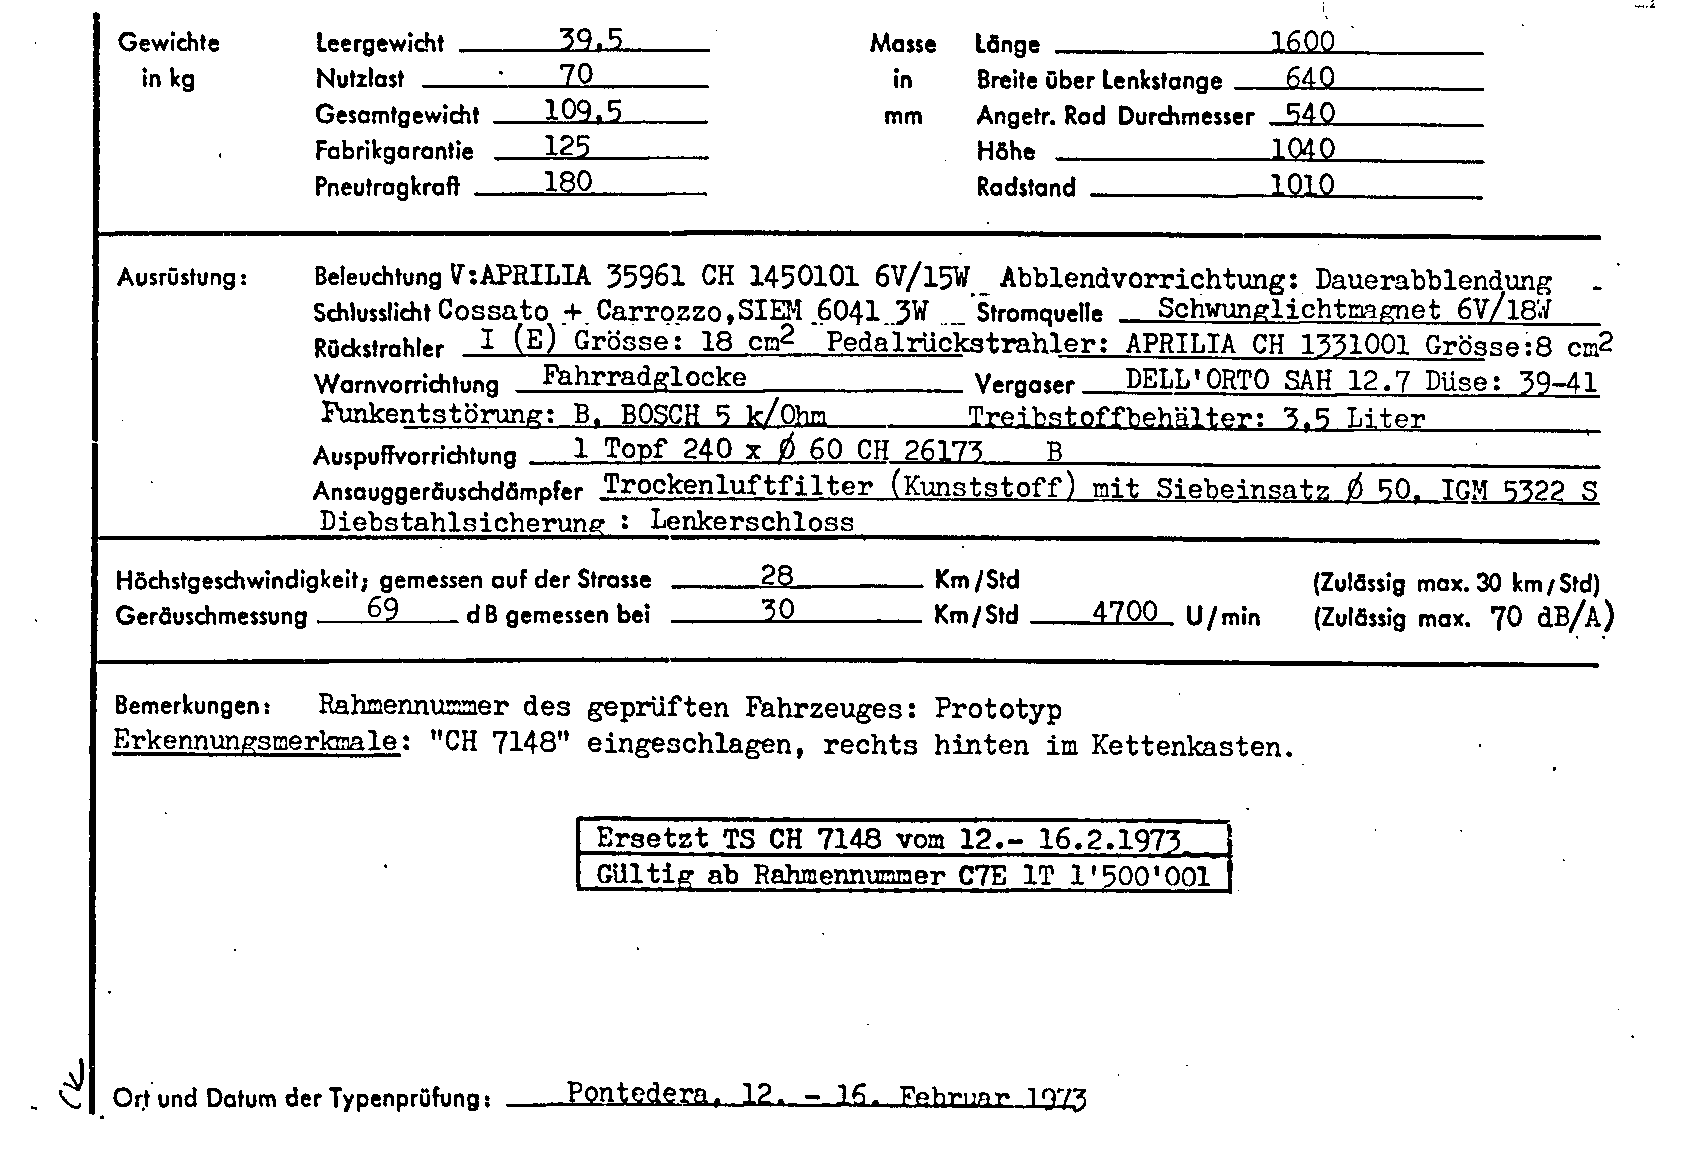 Swiss Certificate of Conformity 7148 German Page 2 (TG.DE.7148.2.png)